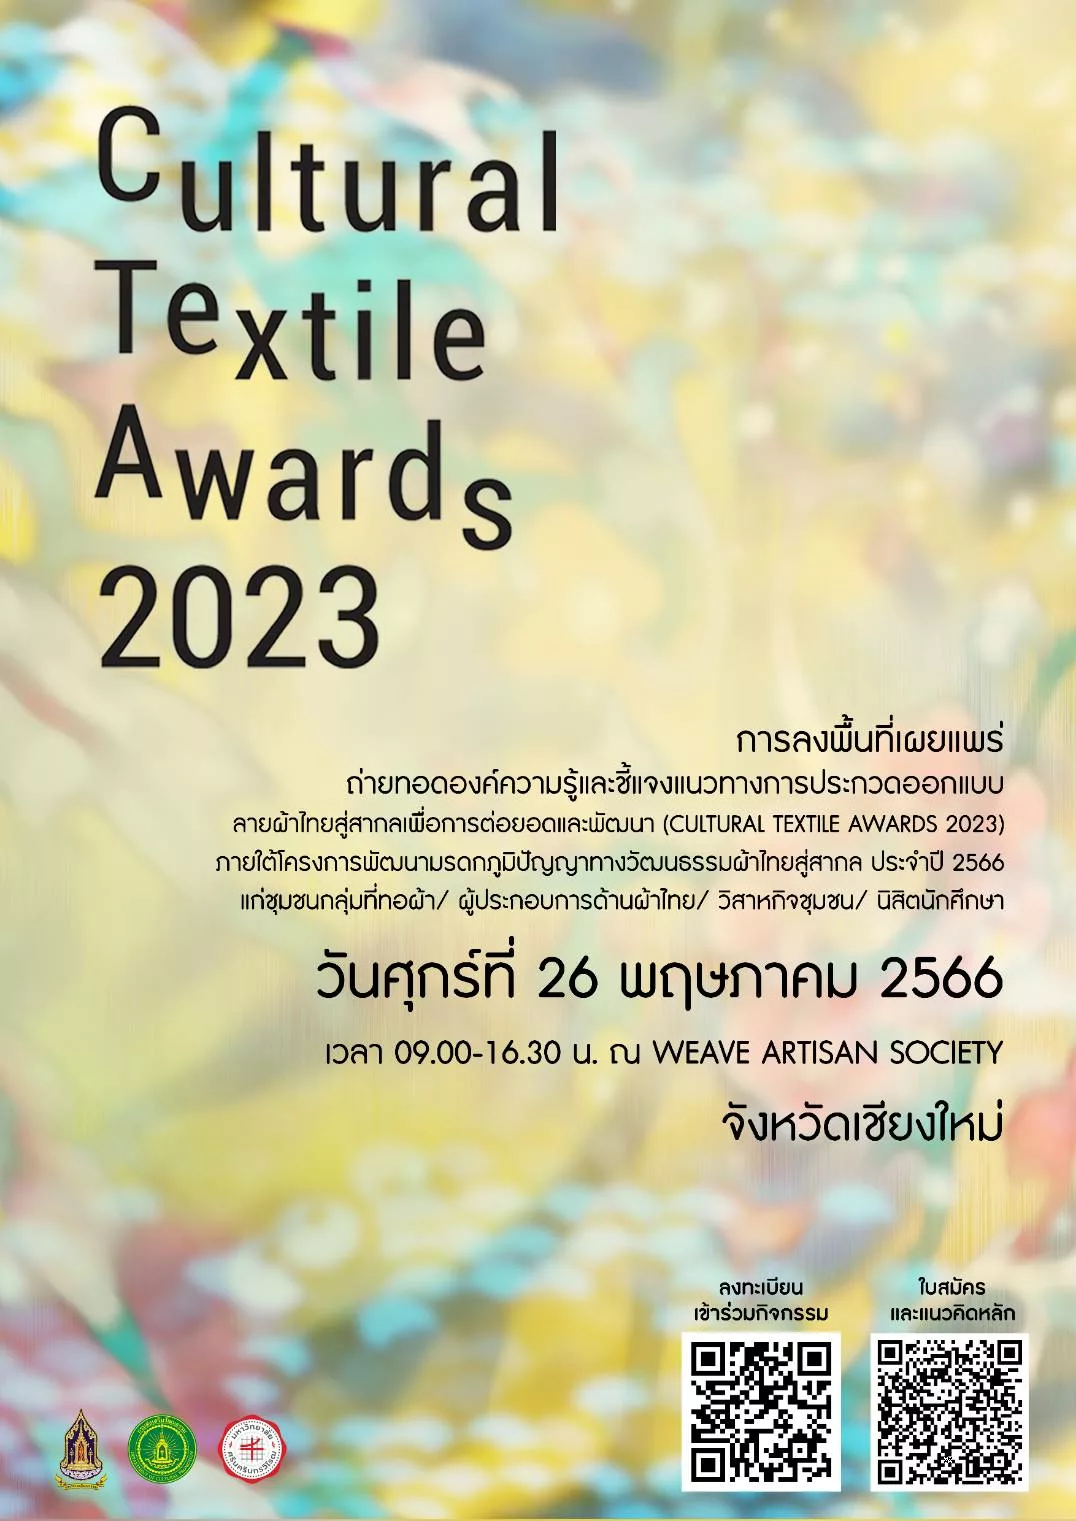 งานประกวดแบบลายผ้า (𝘊𝘶𝘭𝘵𝘶𝘳𝘢𝘭 𝘵𝘦𝘹𝘵𝘪𝘭𝘦 𝘢𝘸𝘢𝘳𝘥 2023) สัญจรภาคเหนือ เพื่ออนุรักษ์ภูมิปัญญาการทอผ้า ต่อยอดและพัฒนาภายใต้โครงการพัฒนามรดกภูมิปัญญาทางวัฒนธรรมผ้าไทยสู่สากล